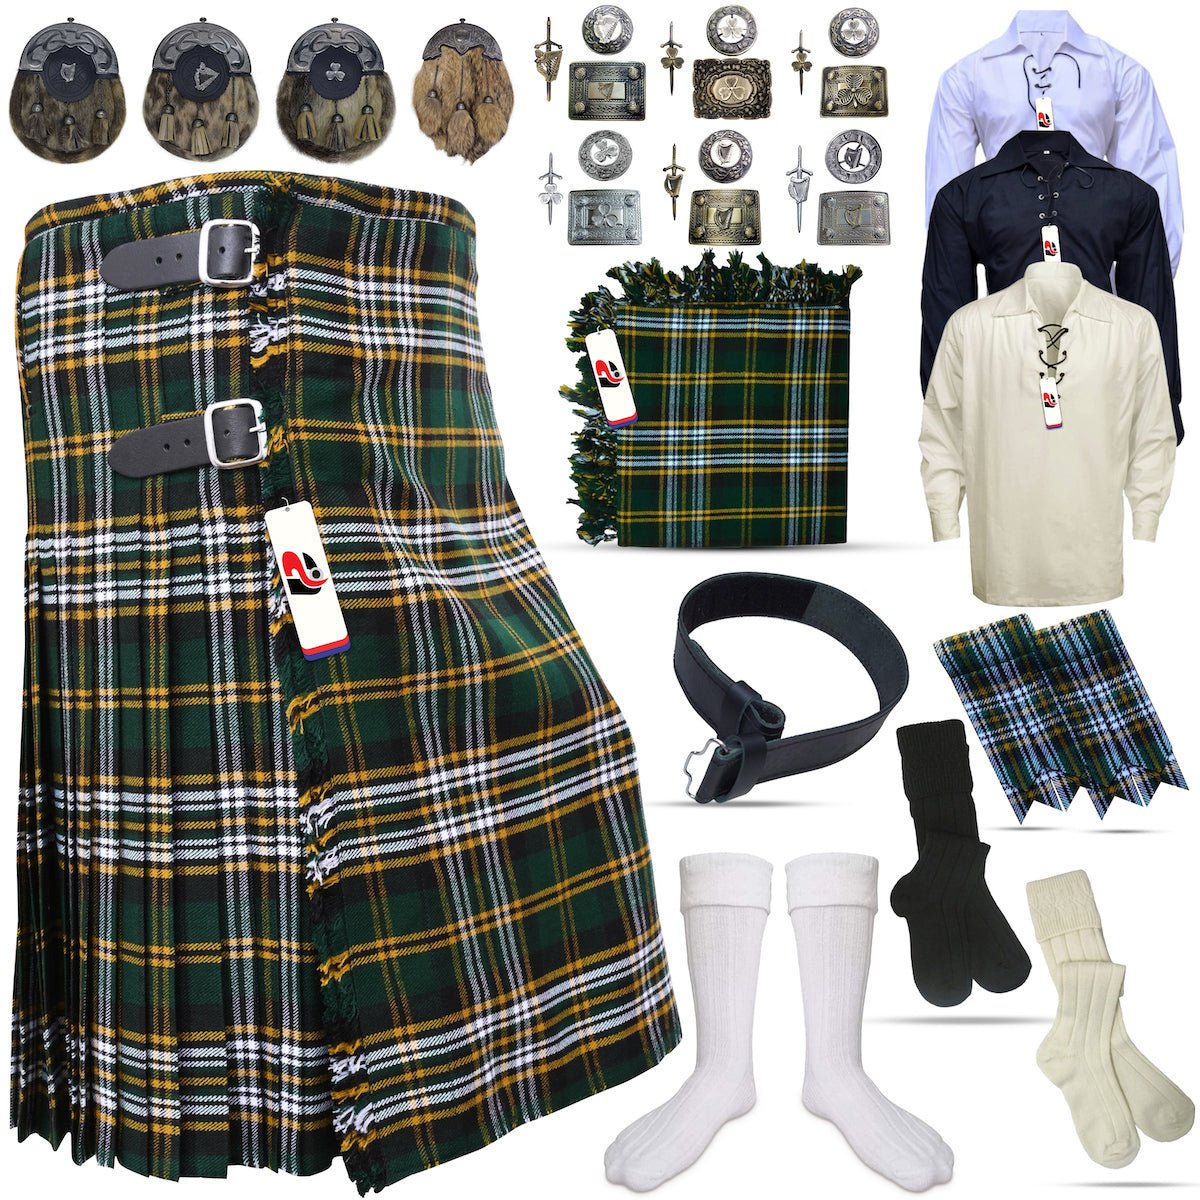 Heritage of Ireland Tartan Kilt Outfit